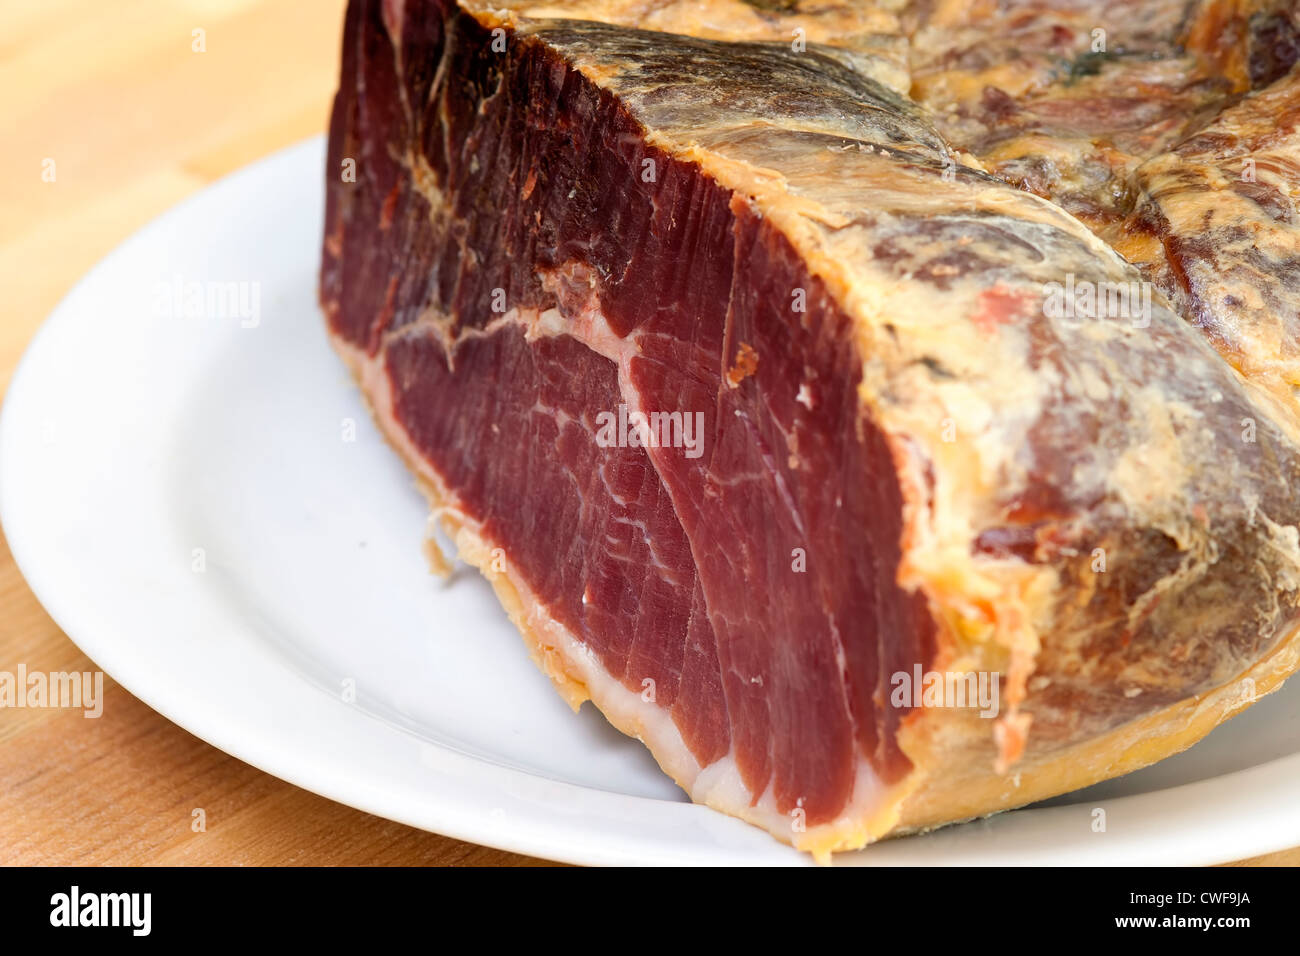 Dettaglio della carne essiccata - Spagnolo maiale - Prosciutto Serrano Foto Stock